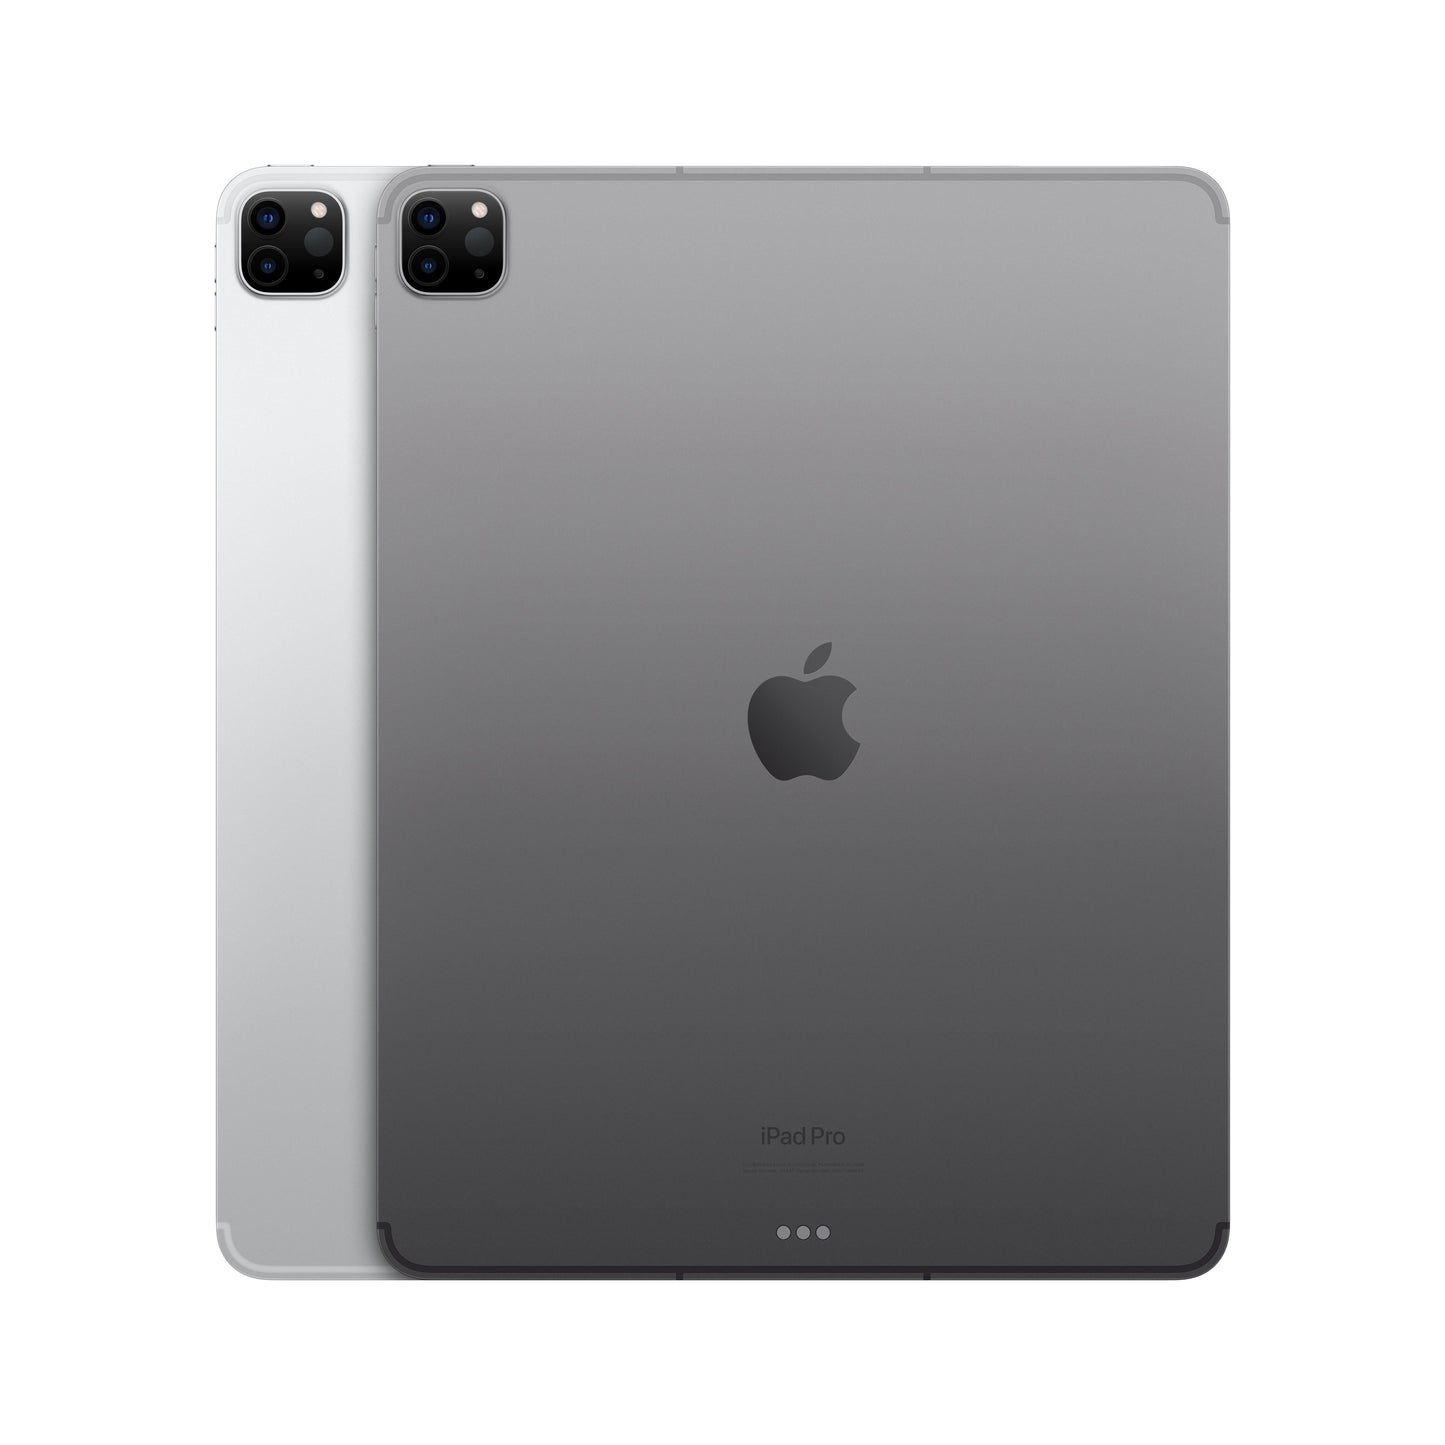 2022 12.9-inch iPad Pro Wi-Fi + Cellular 512GB - Space Grey (6th generation)